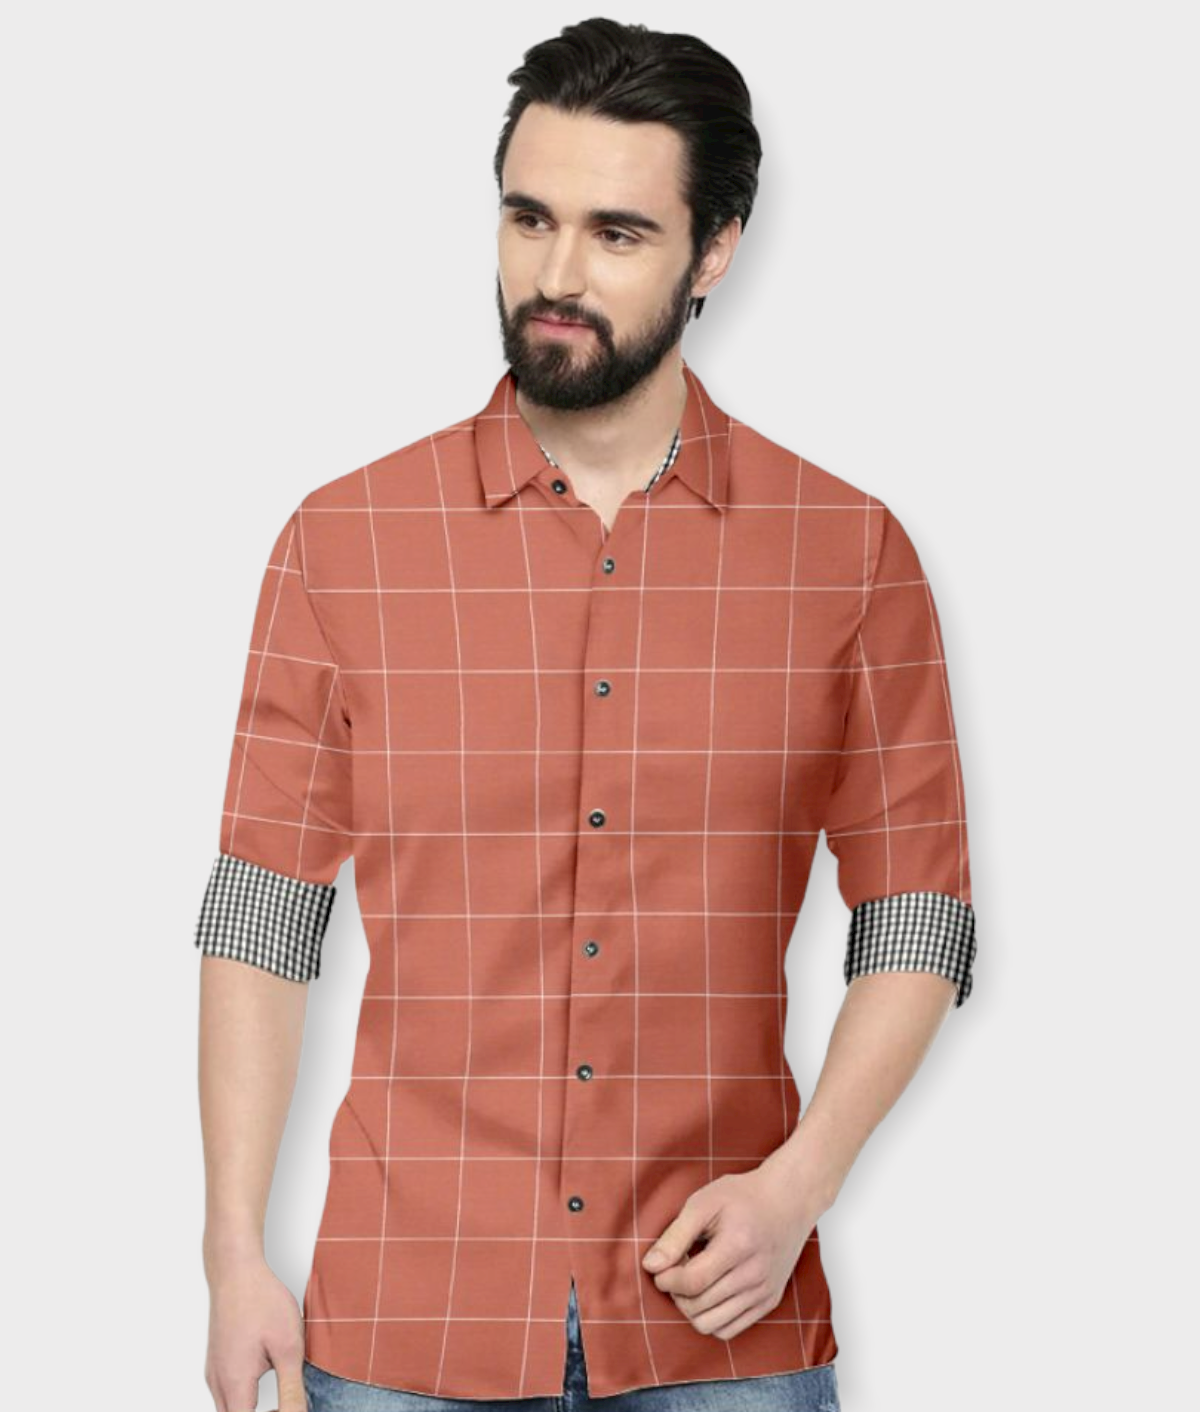     			P&V CREATIONS - Orange Cotton Blend Regular Fit Men's Casual Shirt (Pack of 1)